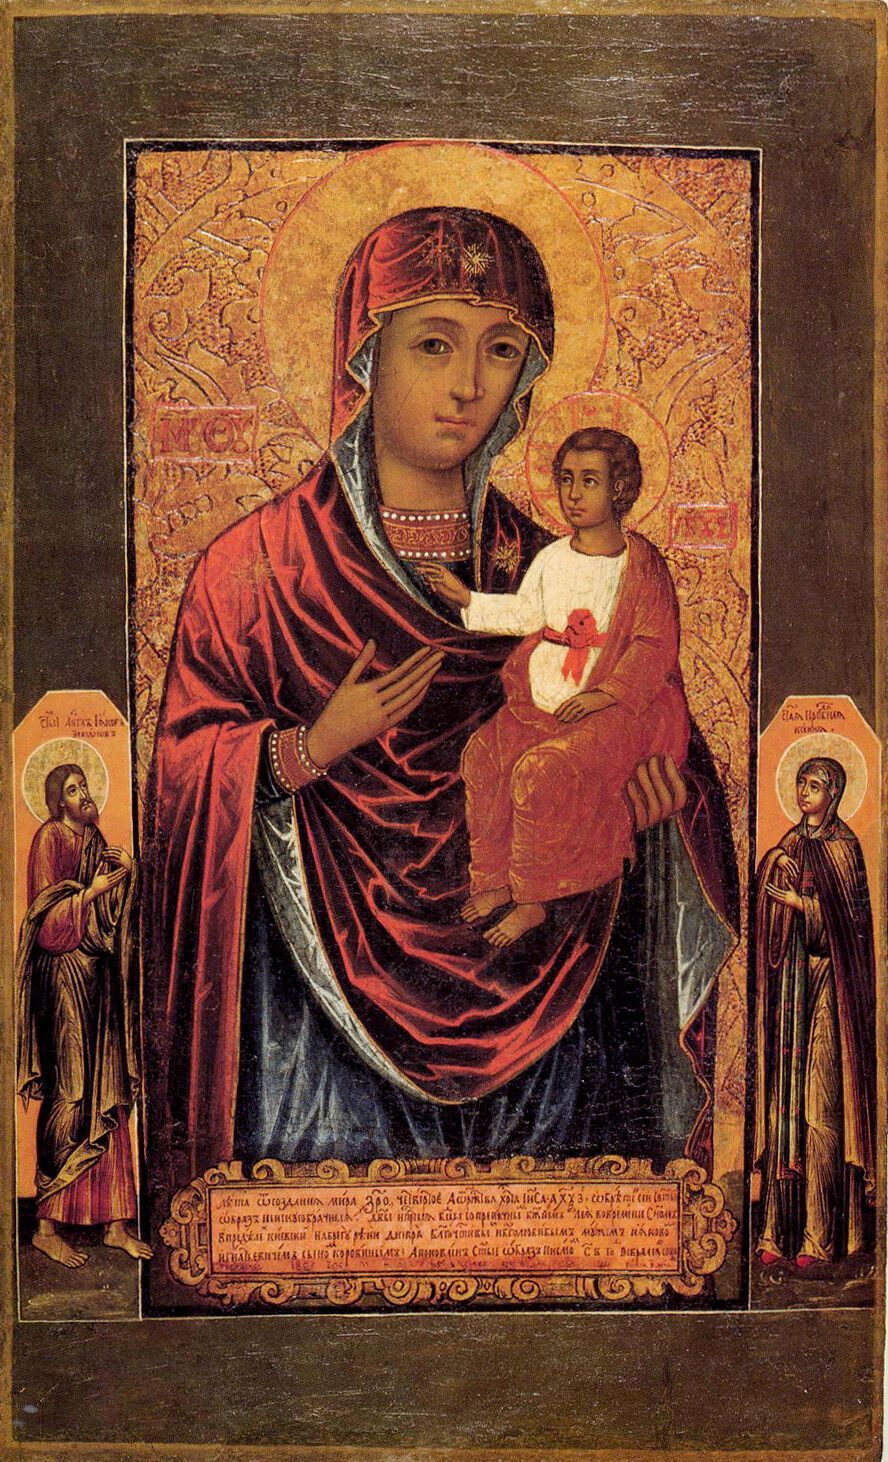 Согласно преданию, Виленская икона Божьей Матери была написана апостолом от семидесяти евангелистом Лукой